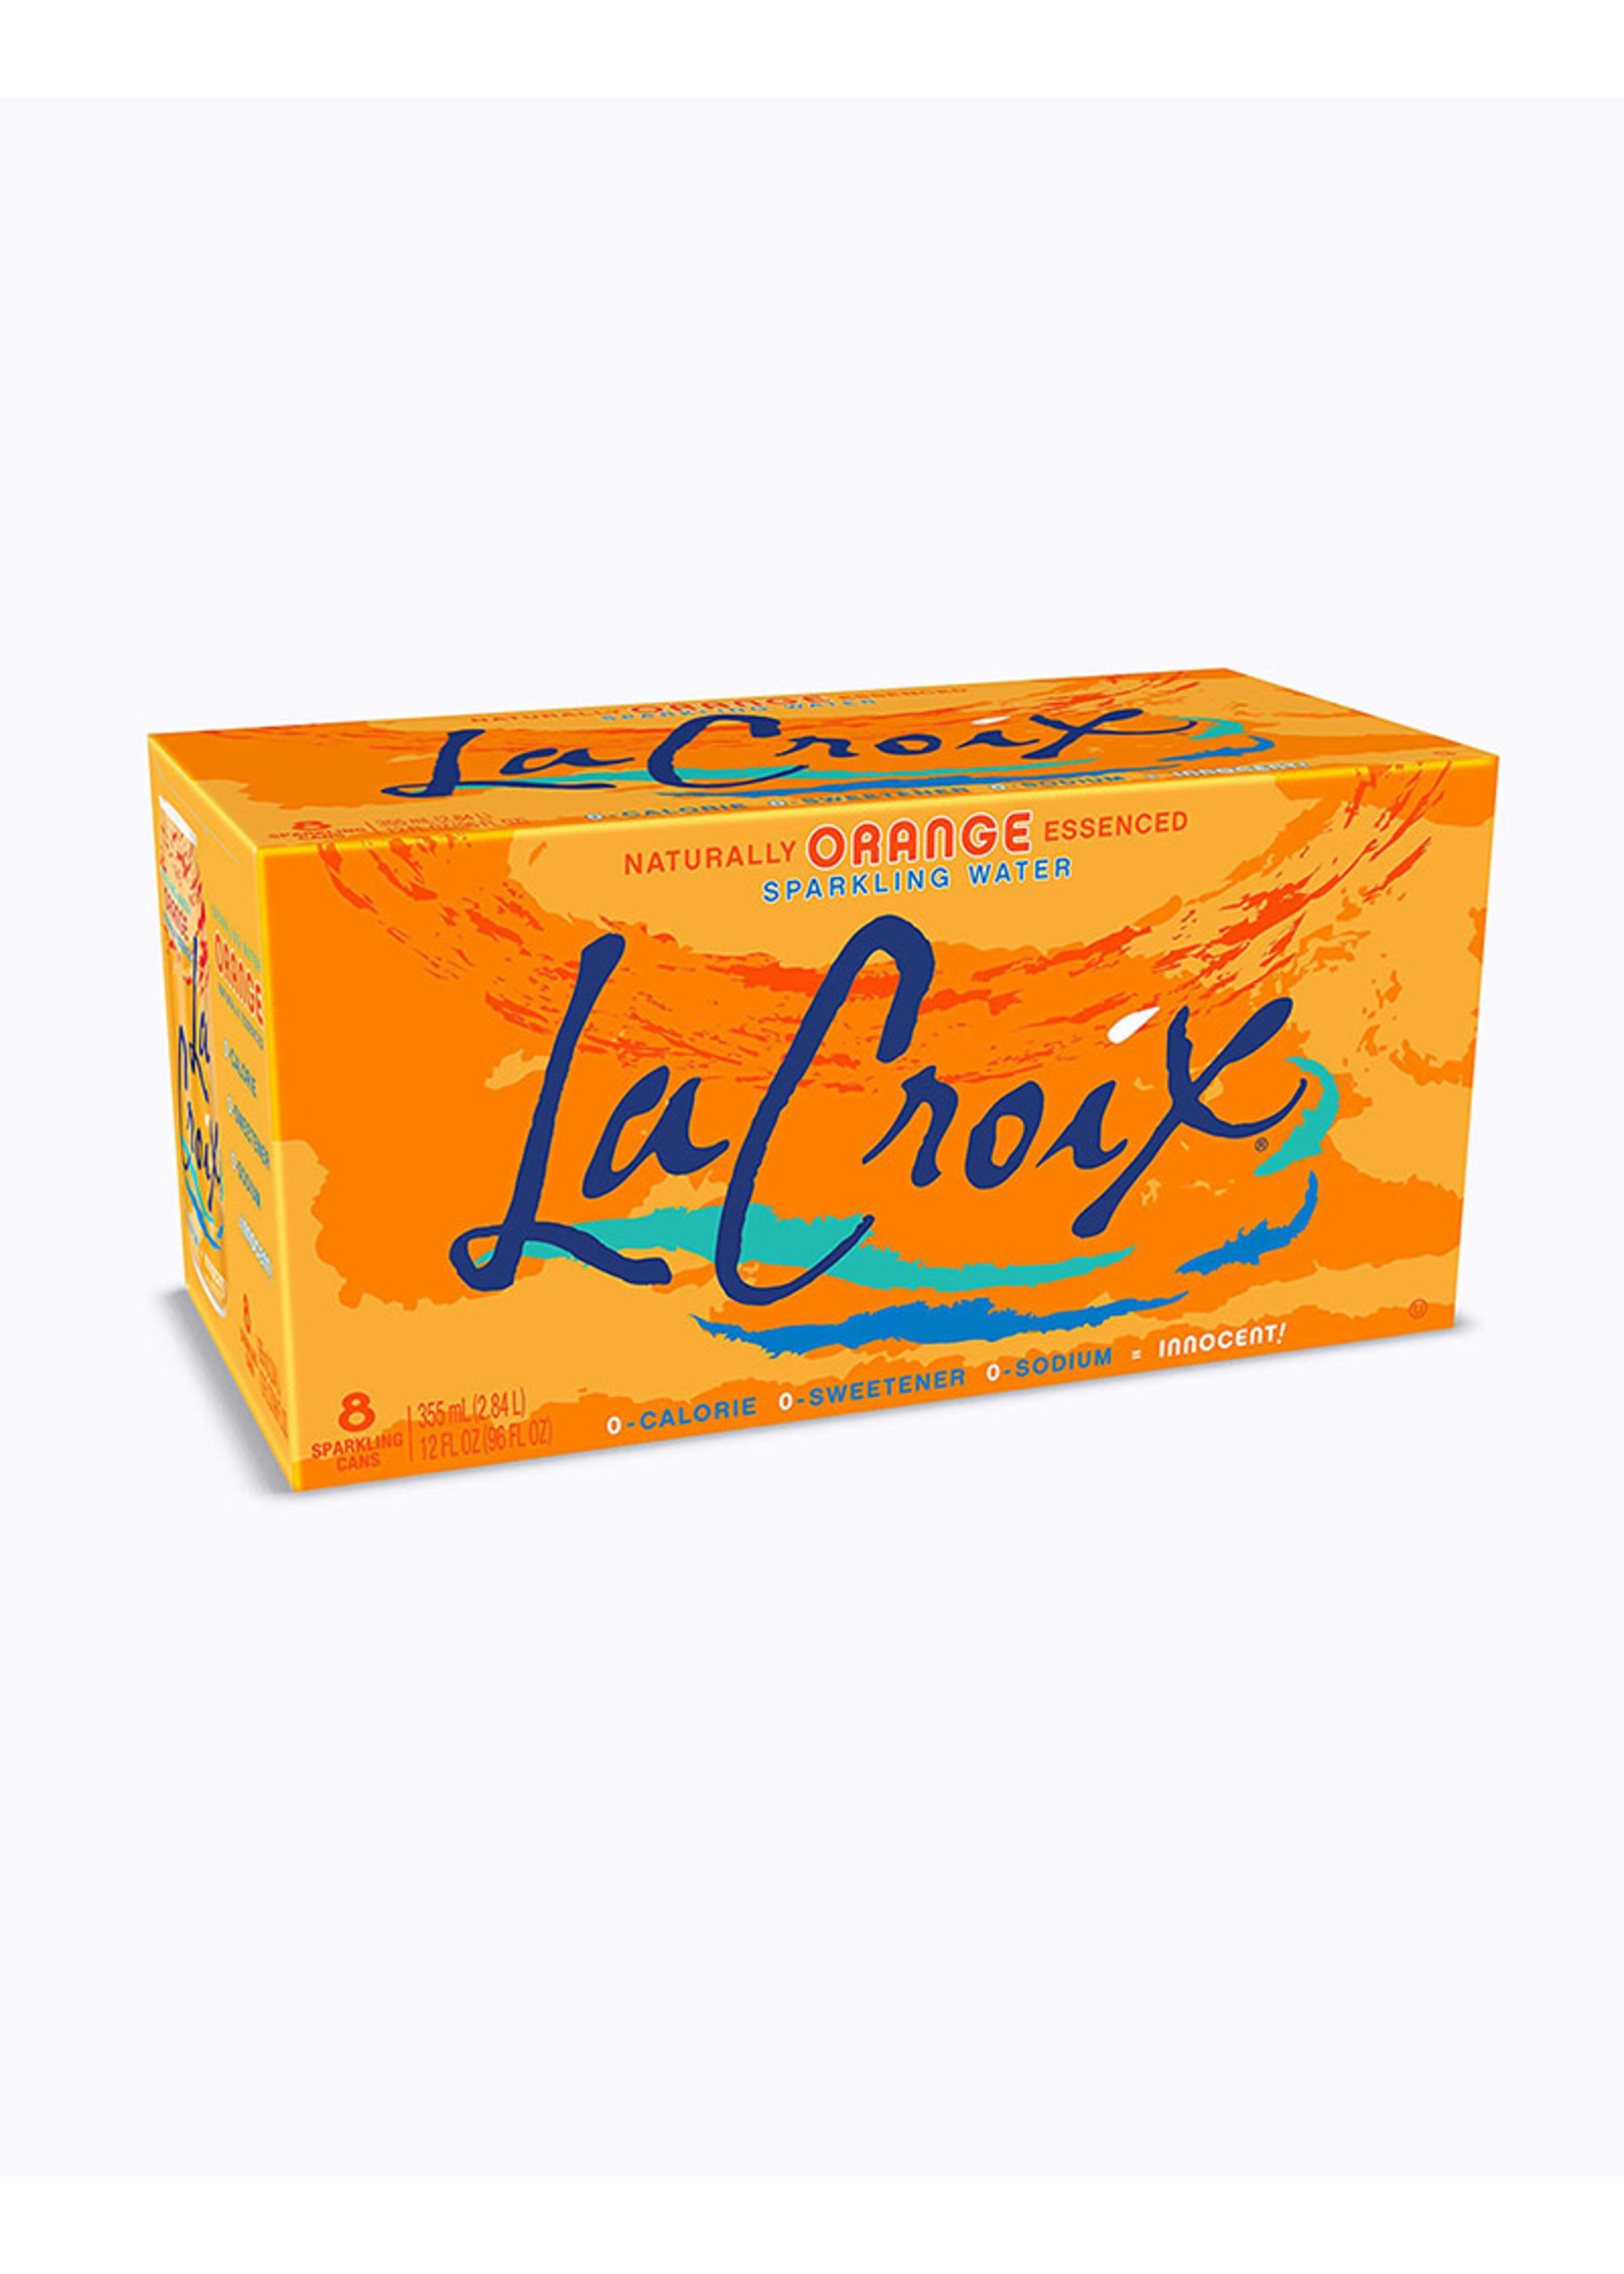 La Croix La Croix - Sparkling Water, Orange (8pk)